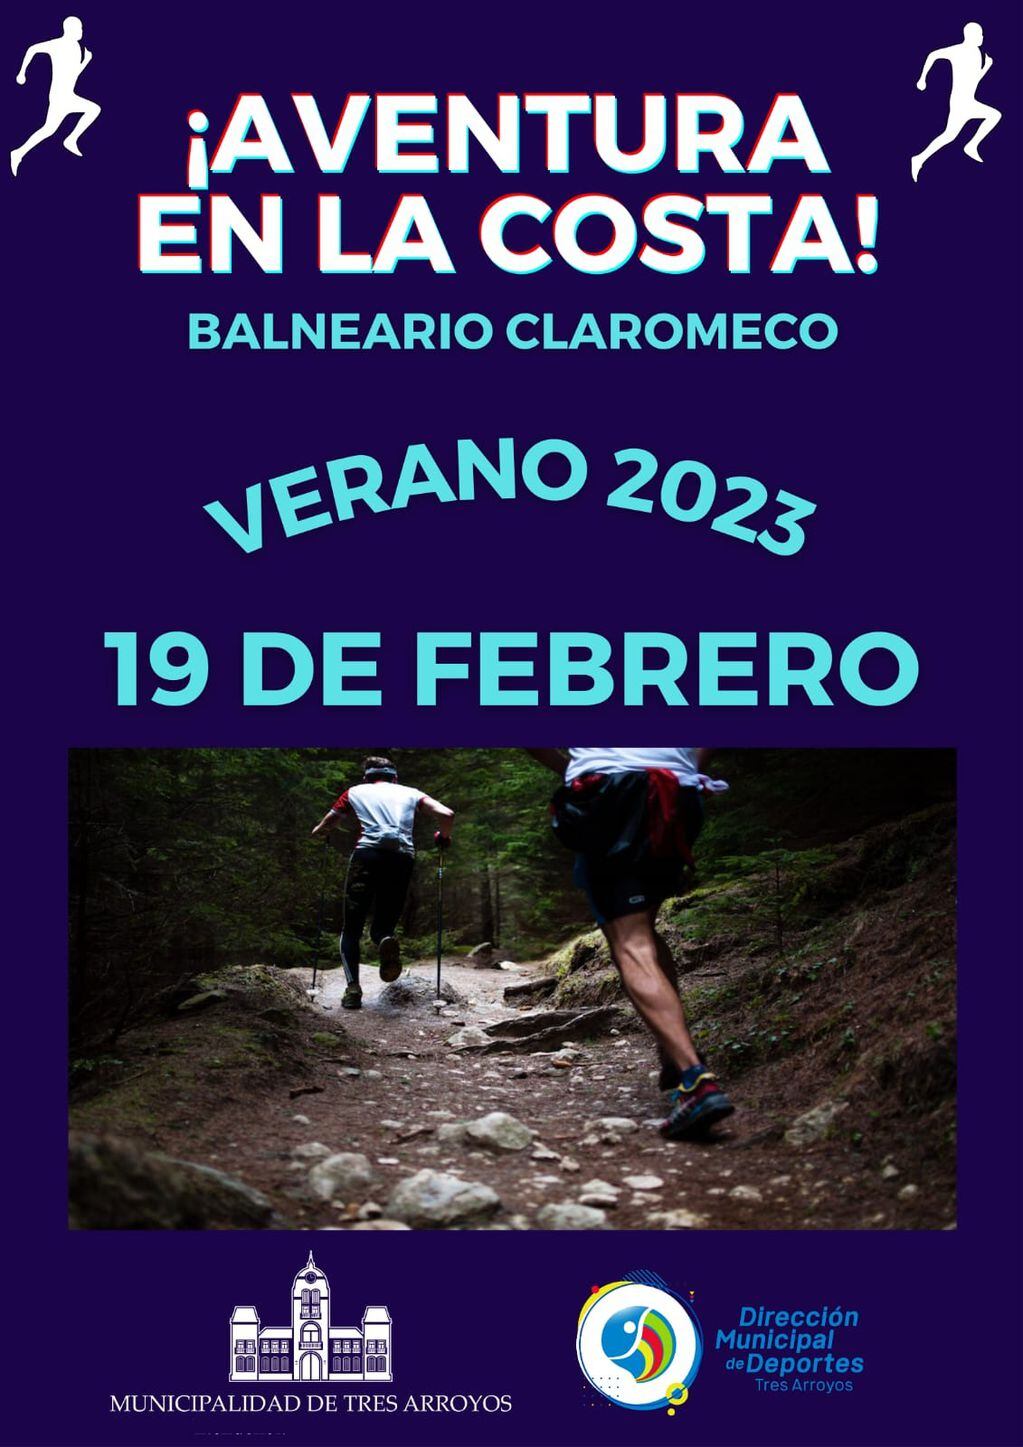 Inscripción abierta para el  “3° Maratón Aventura” en Claromecó